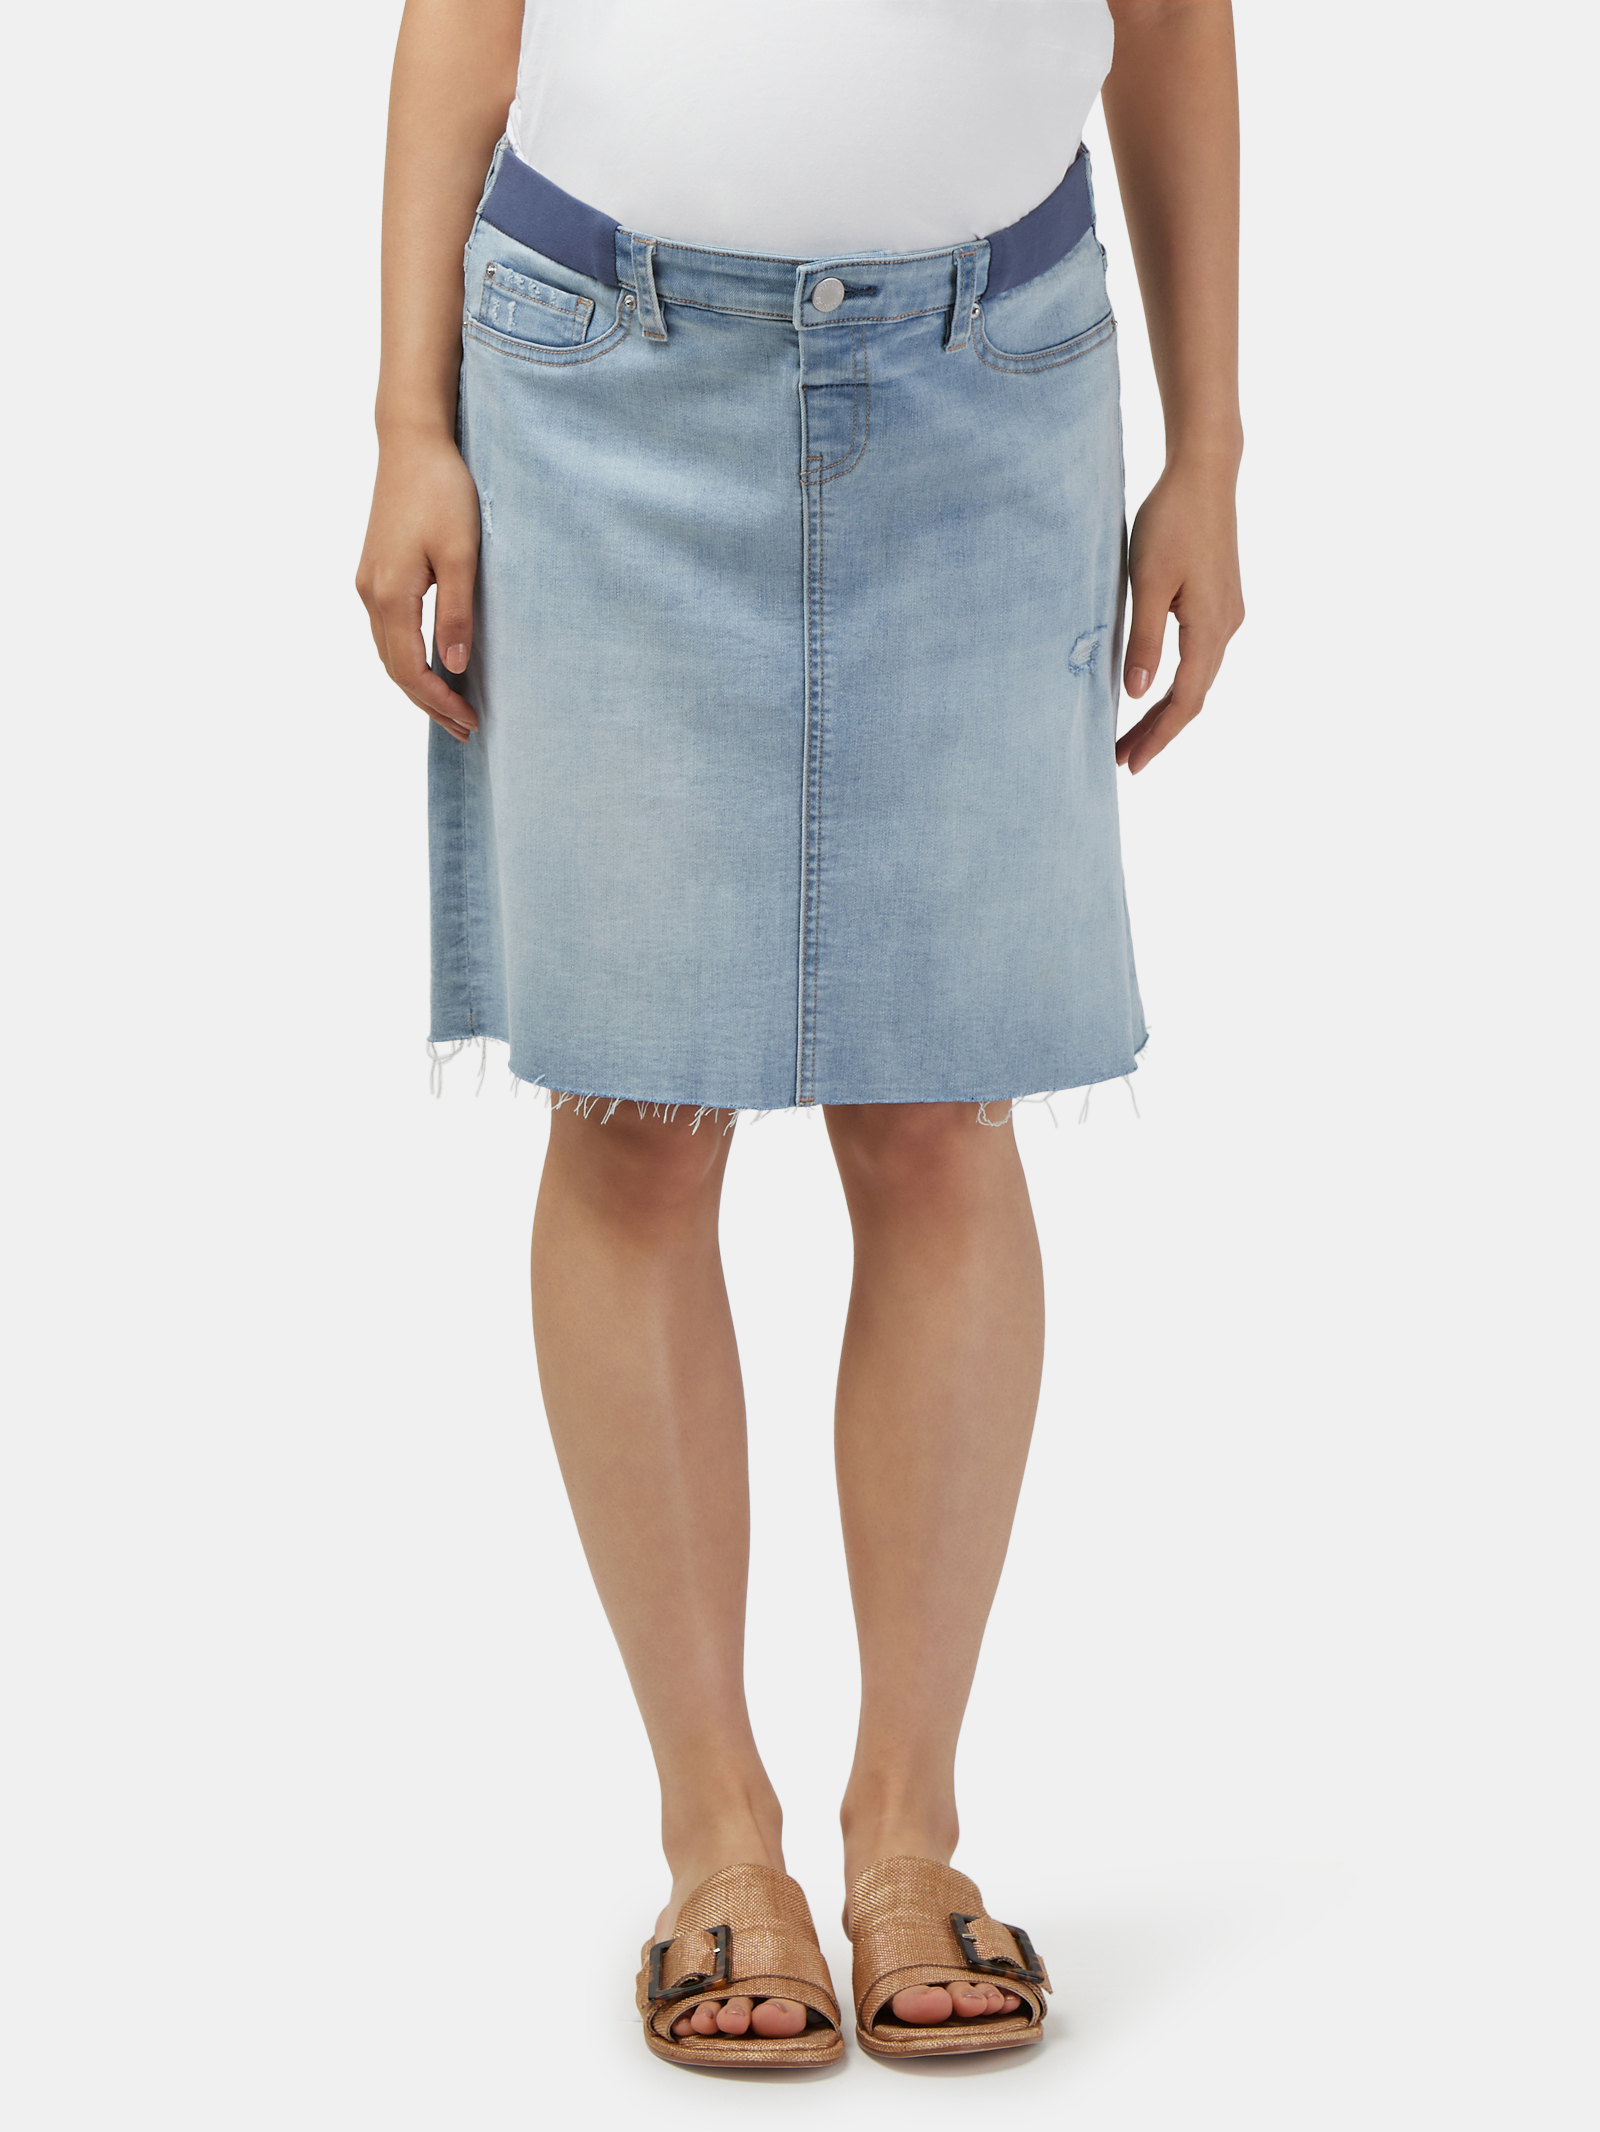 Fcuk Blue Denim Skirt 10 - Reluv Clothing Australia